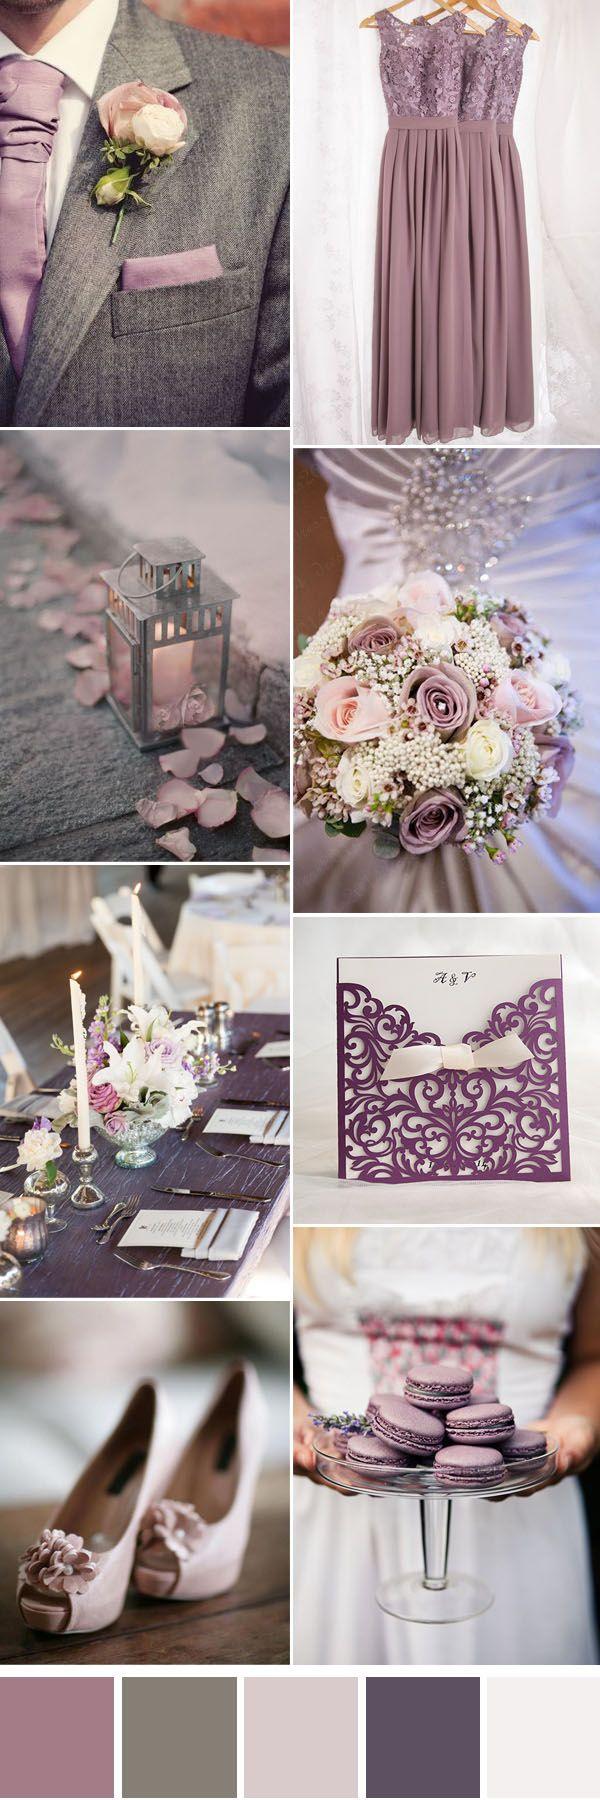 زفاف - Six Gorgeous Neutral Wedding Color Combos To Inspire You